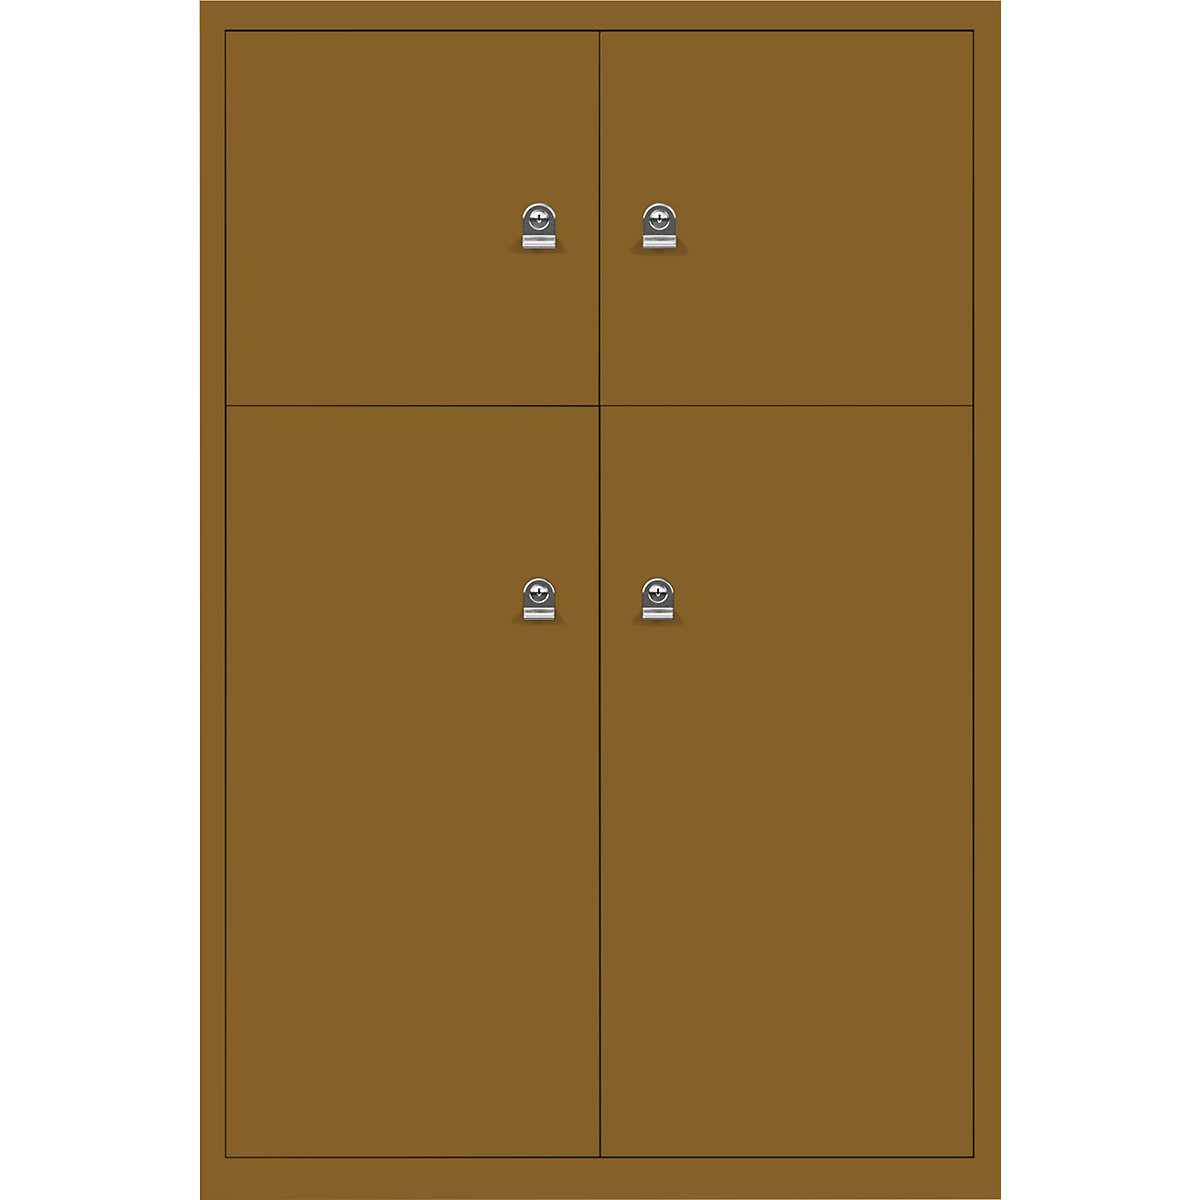 Omara s predelki z zaklepanjem LateralFile™ – BISLEY, 4 predelki z zaklepanjem, višina 2 x 375 mm, 2 x 755 mm, dižonsko rjave barve-28